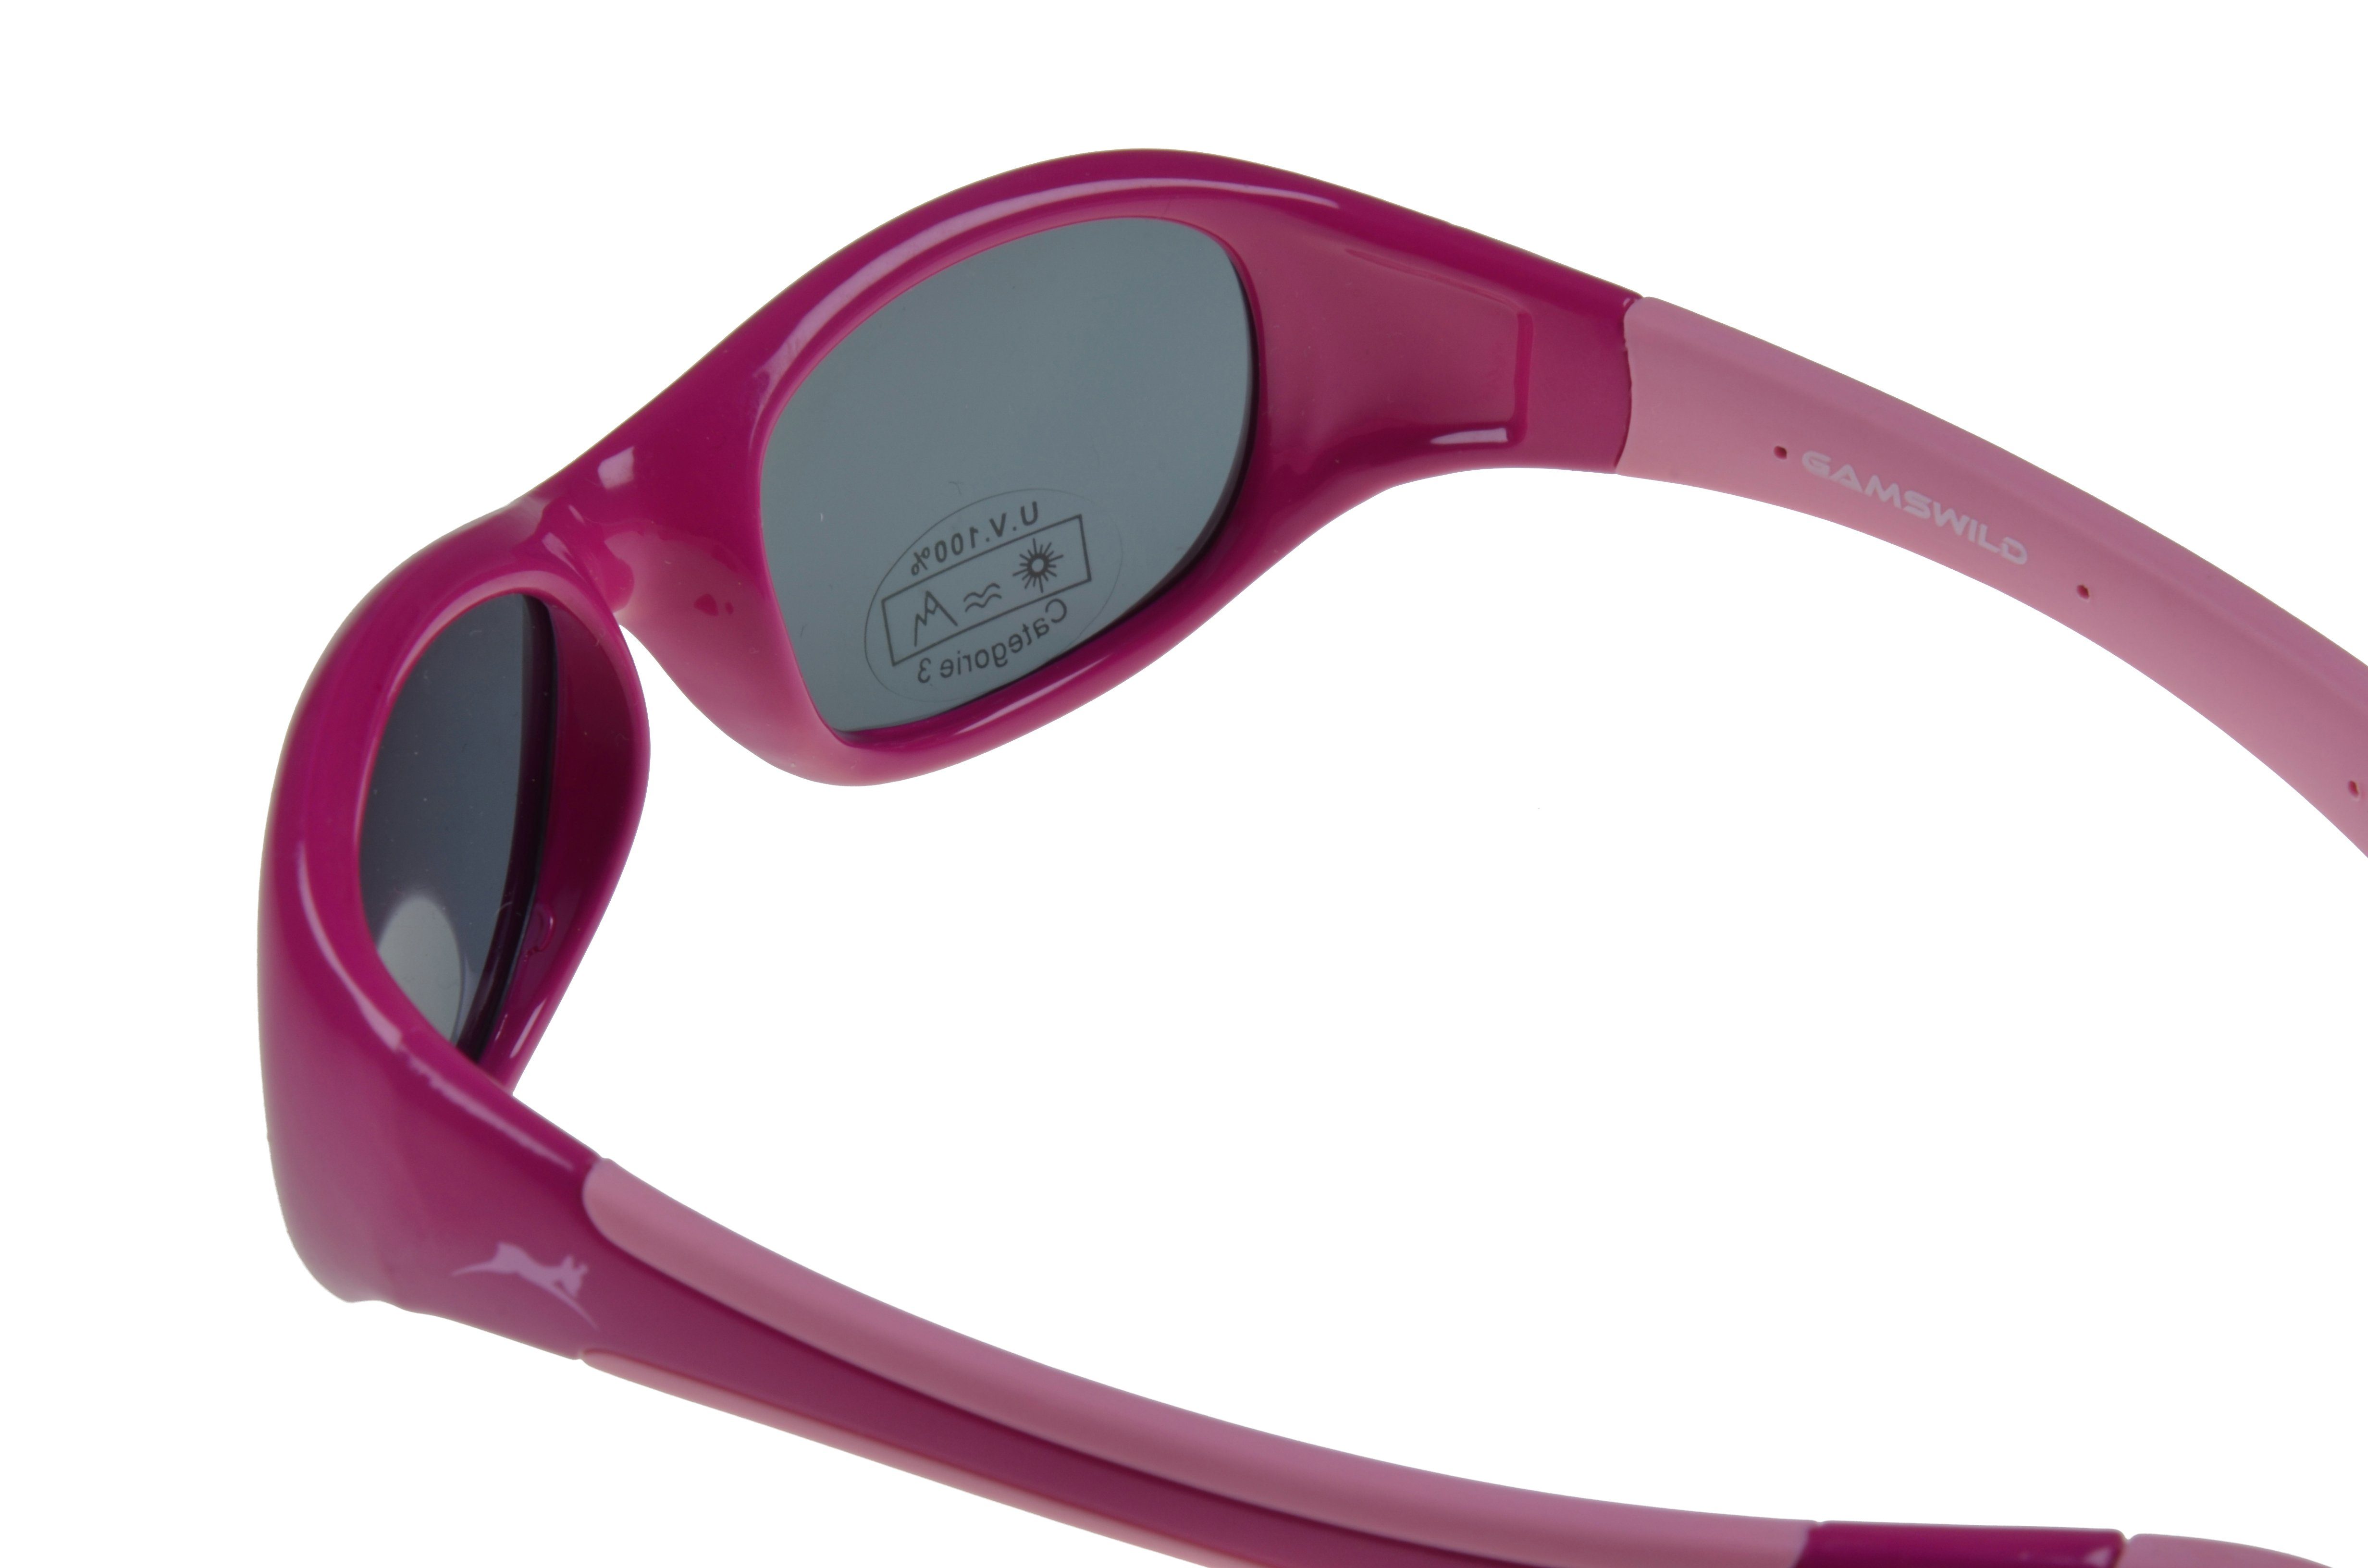 incl. kids Kleinkindbrille rot-orange GAMSKIDS Jahre WK5618 Gamswild Mädchen Sonnenbrille Jungen Unisex, Kinderbrille pink-rosa Brillenband 2-5 grün, rosa,